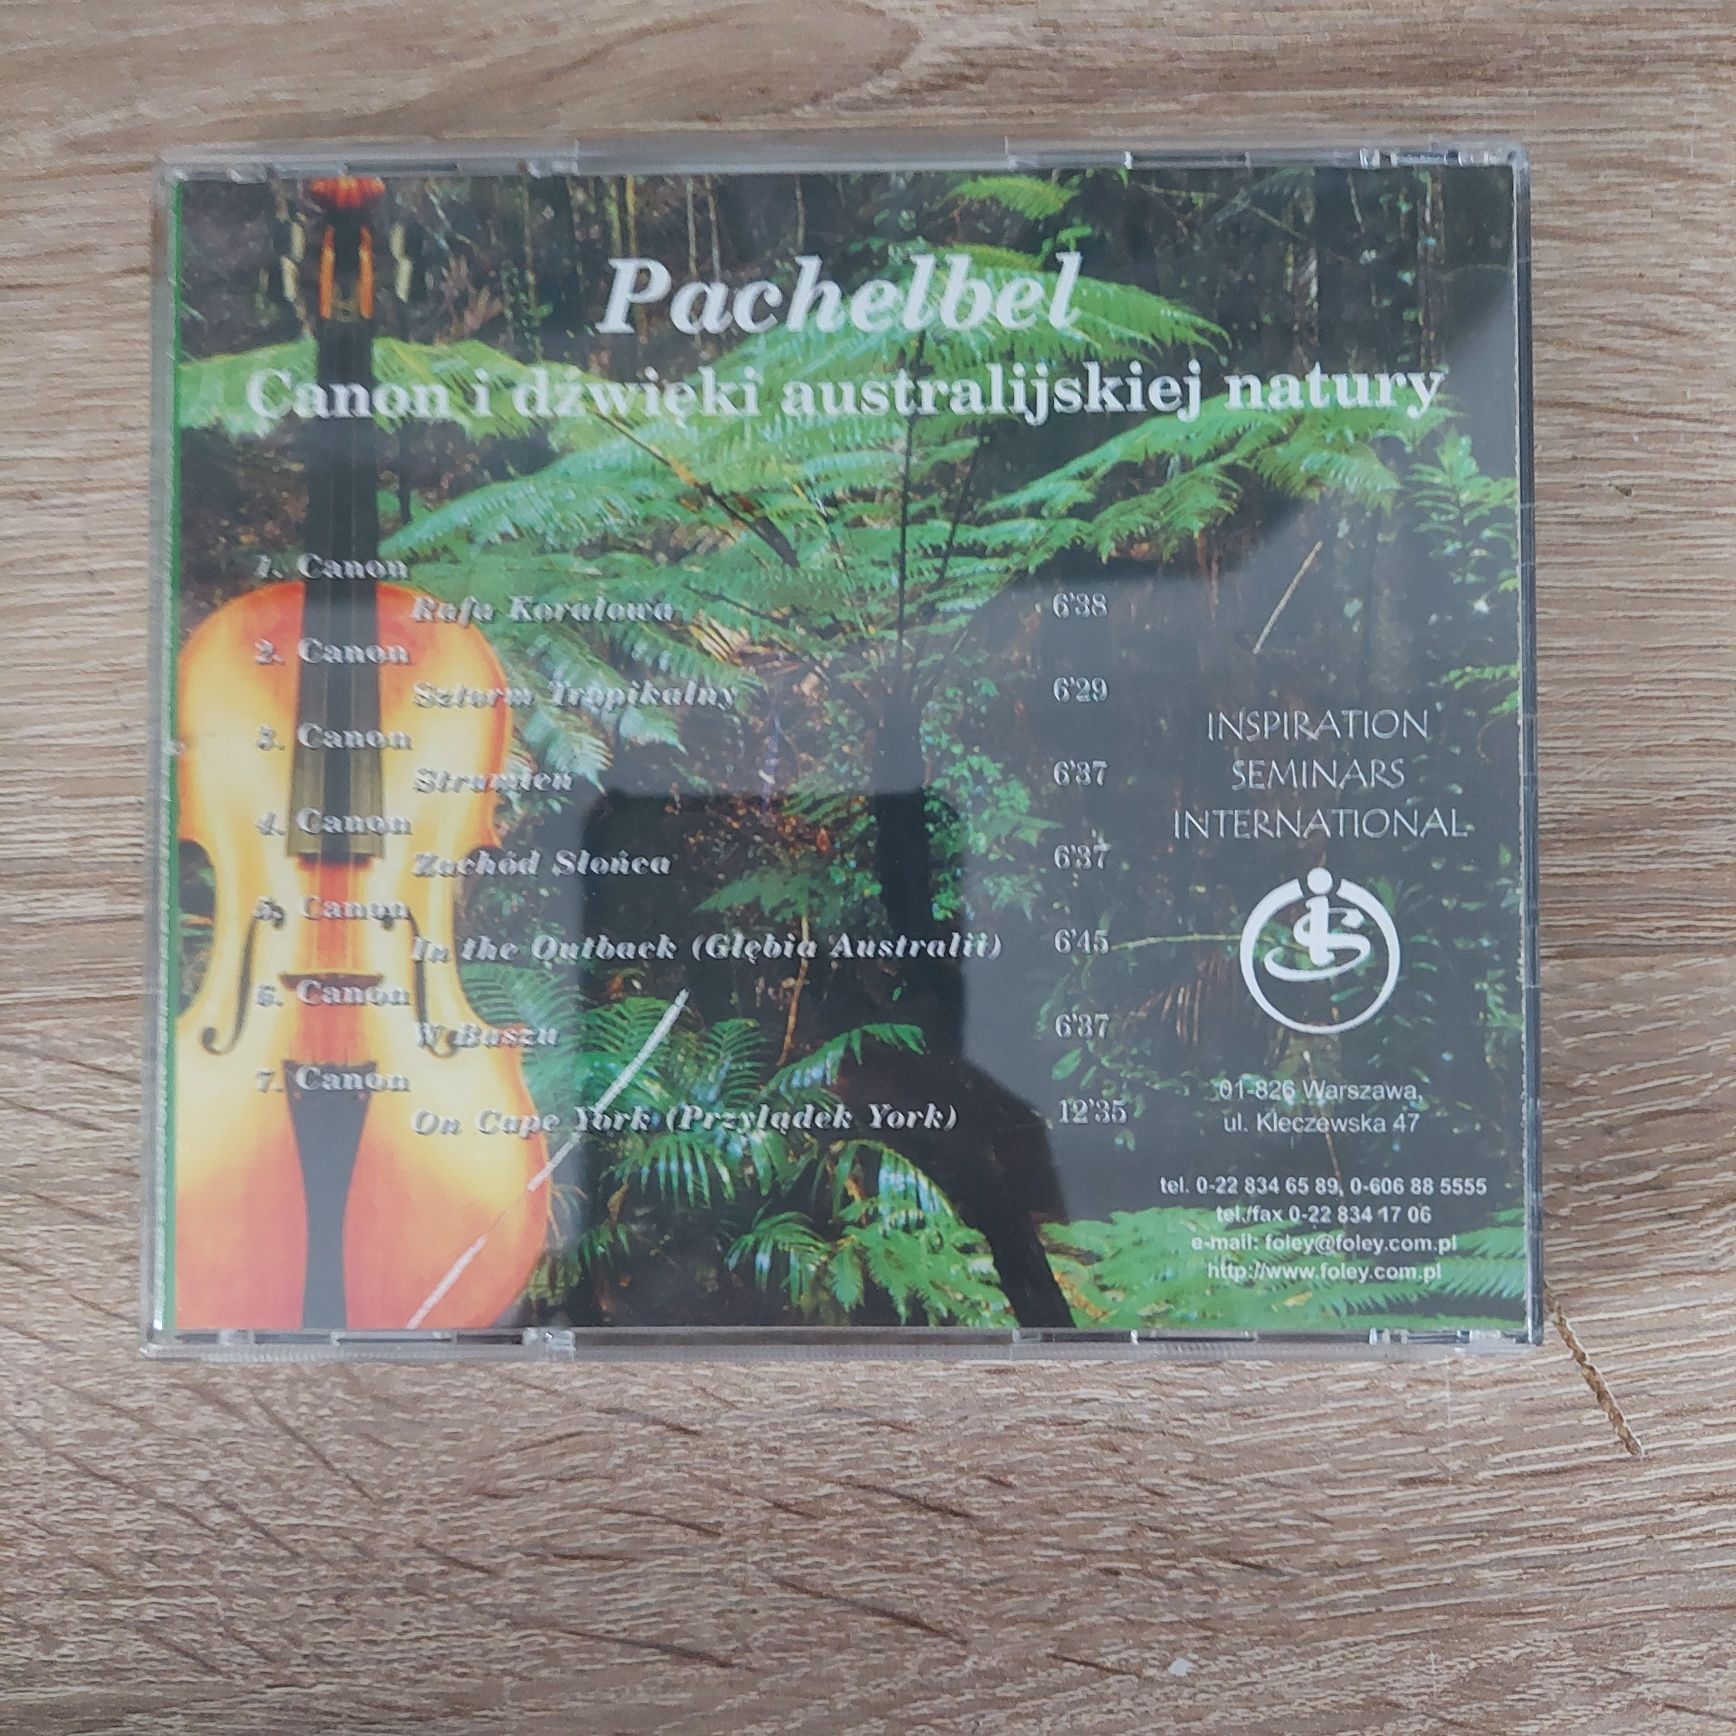 Płyta Pachelbel - Canon i dźwięki australijskiej natury